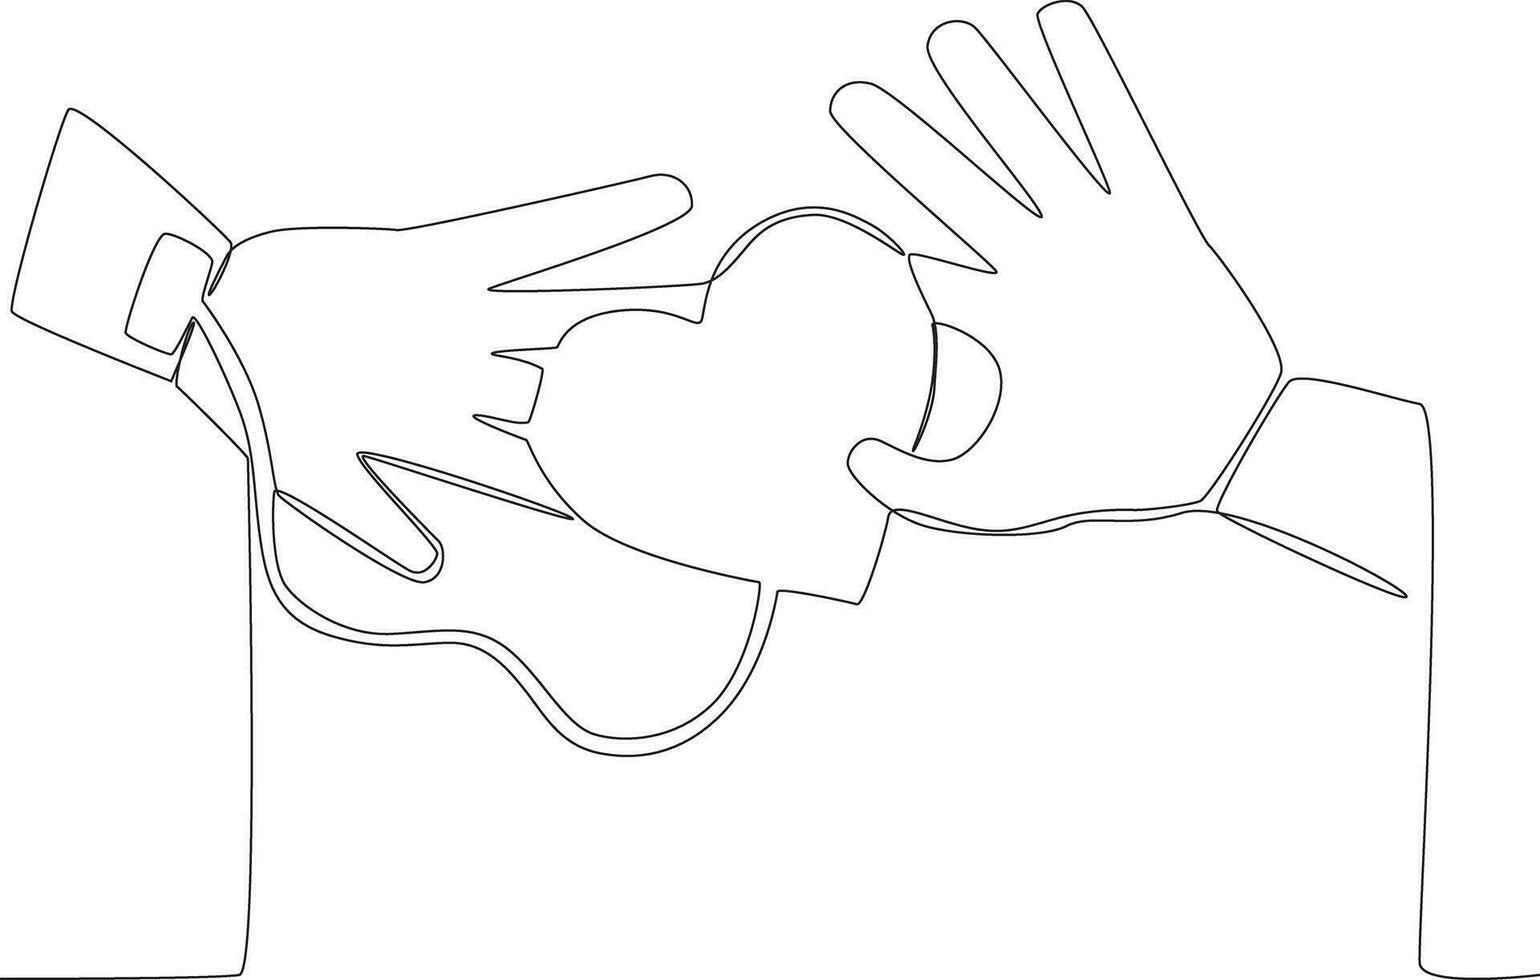 soltero continuo línea dibujo uno mano sostiene el corazón y el otro acepta el donante. sangre donante día concepto vector